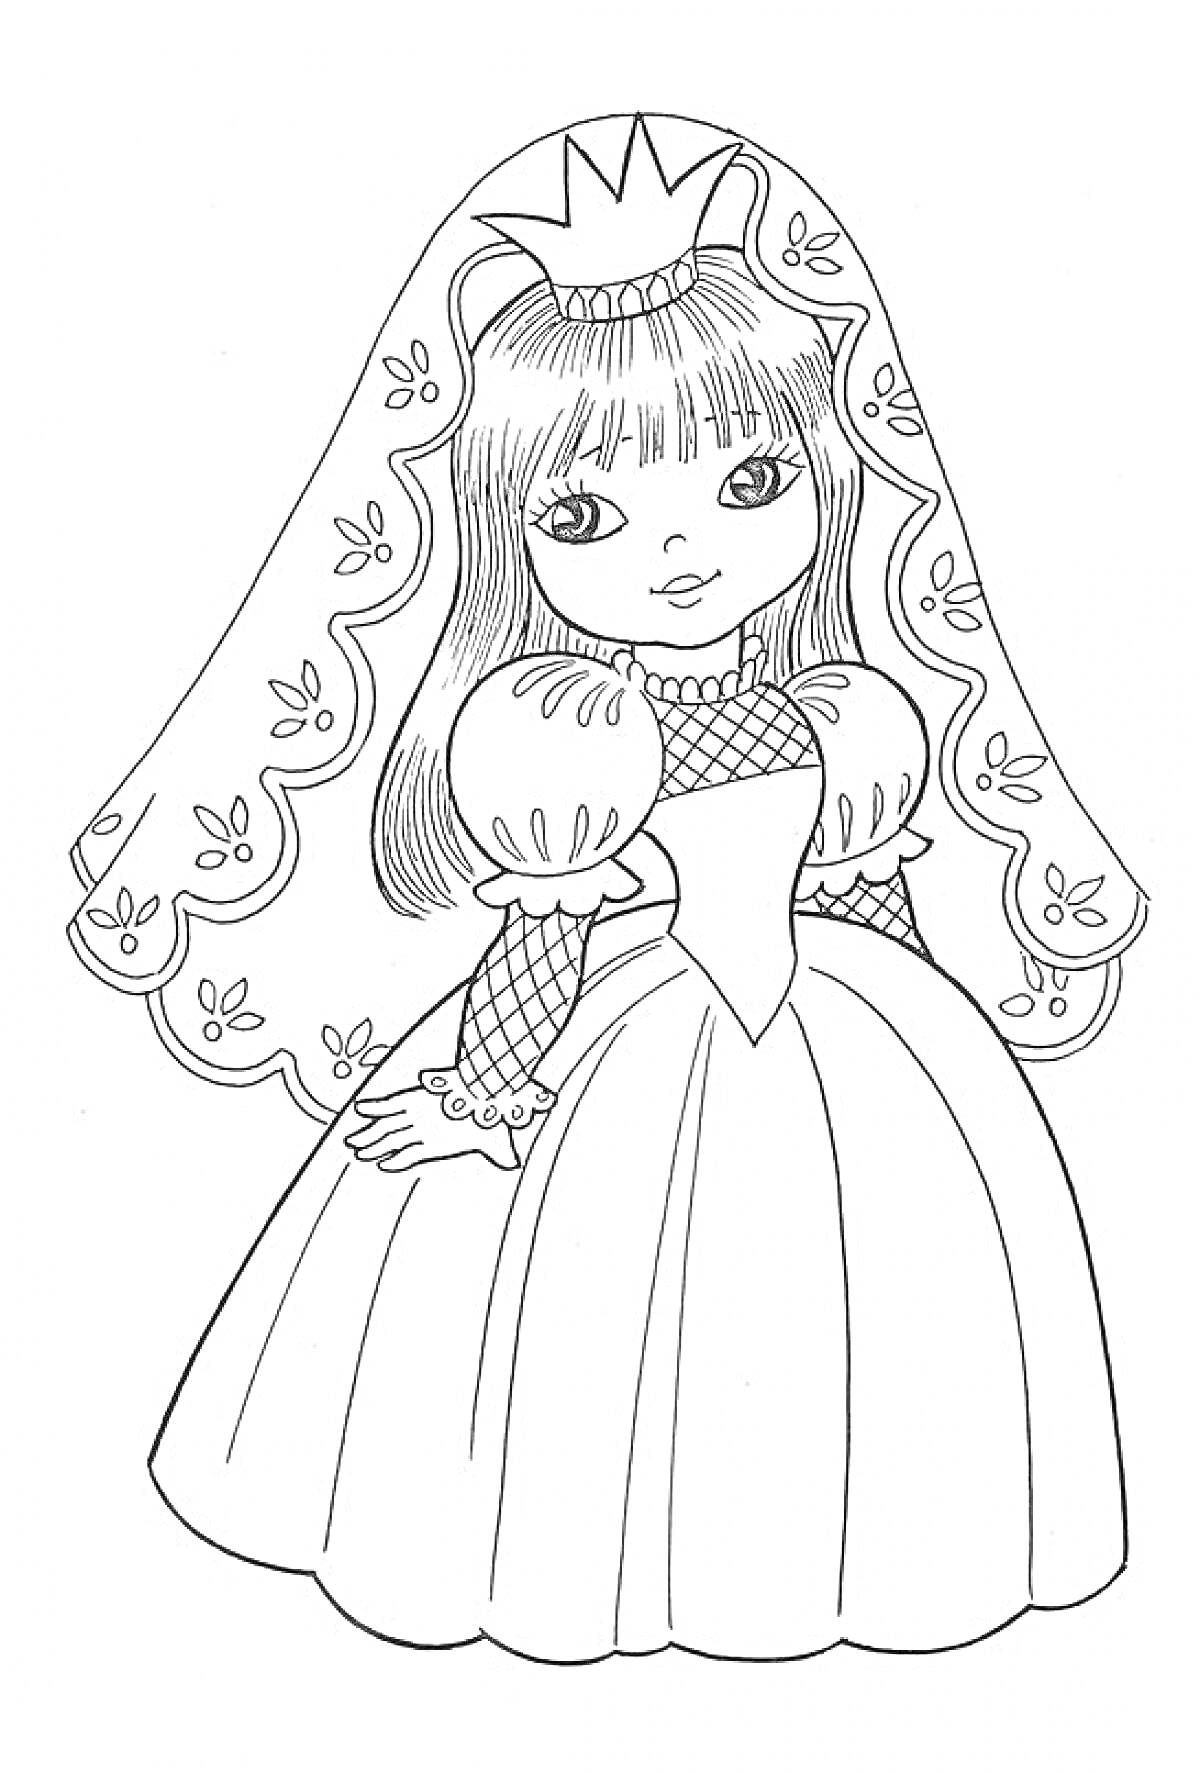 Раскраска Принцесса в длинном платье с накидкой и короной